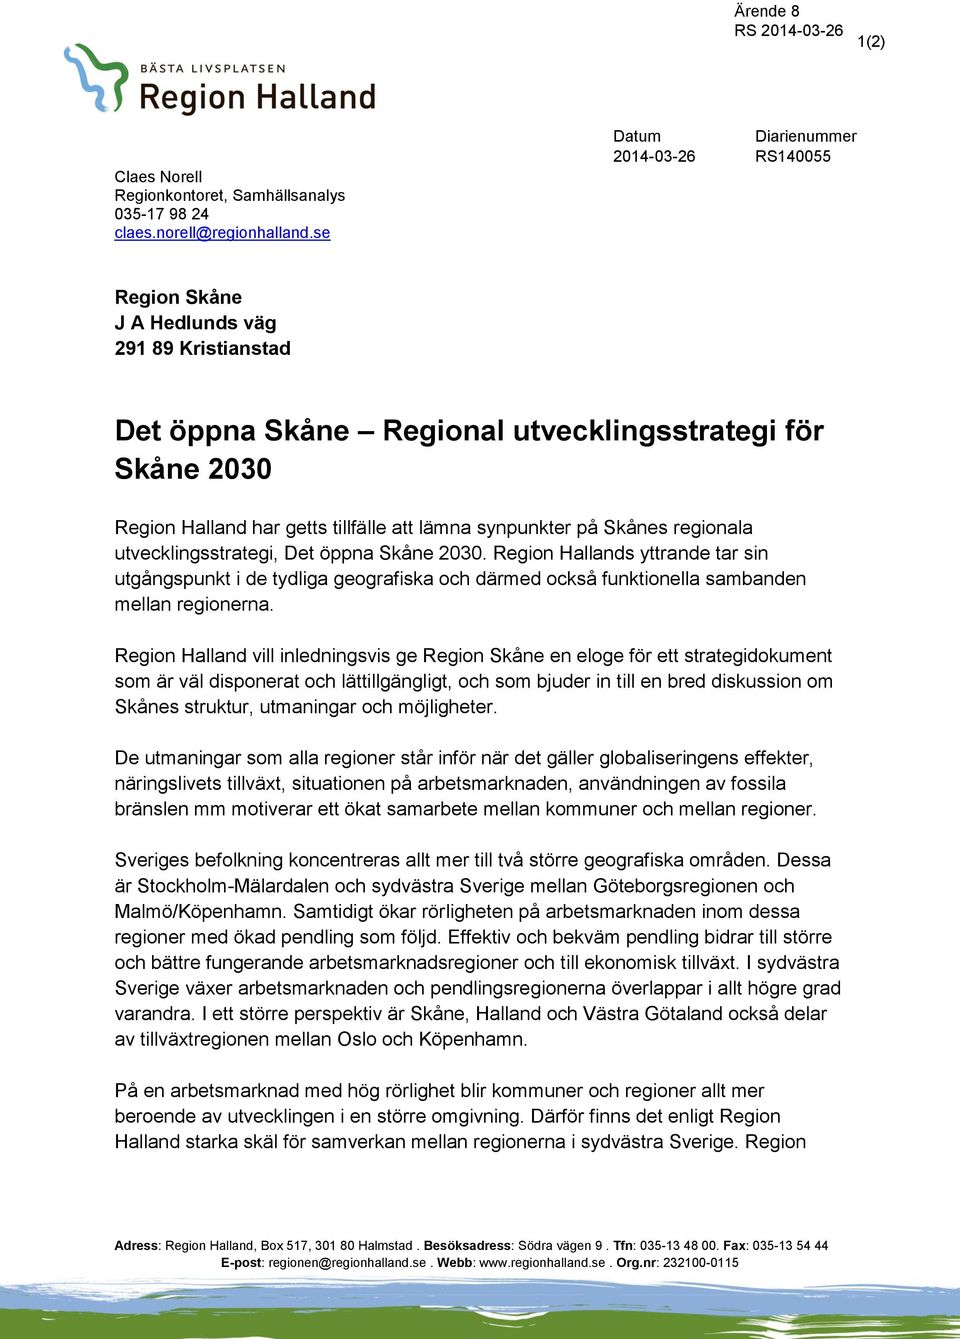 synpunkter på Skånes regionala utvecklingsstrategi, Det öppna Skåne 2030.